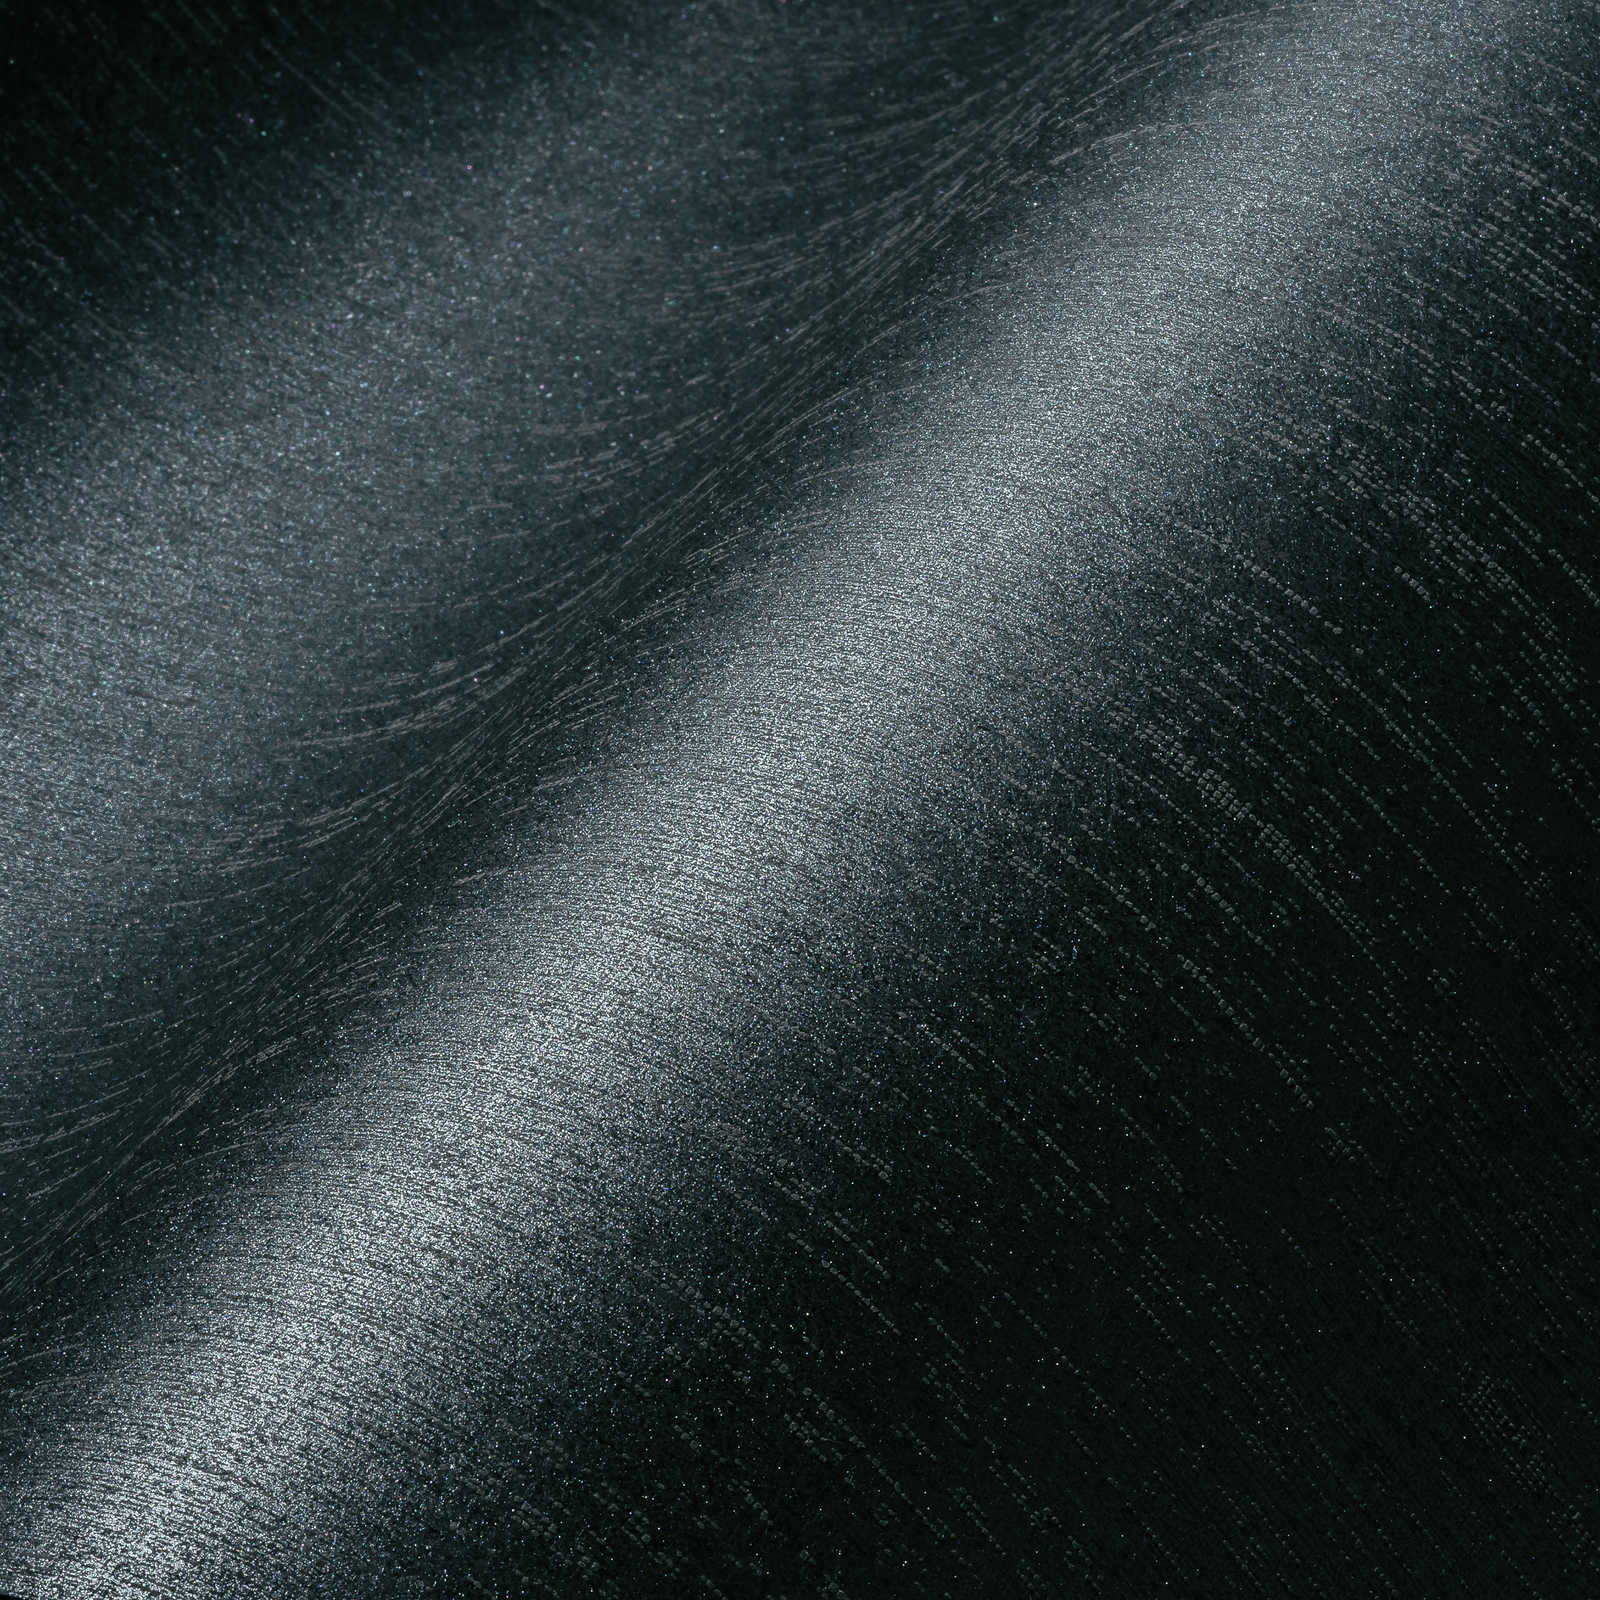             Papier peint gris anthracite avec effet brillant argenté - noir, gris
        